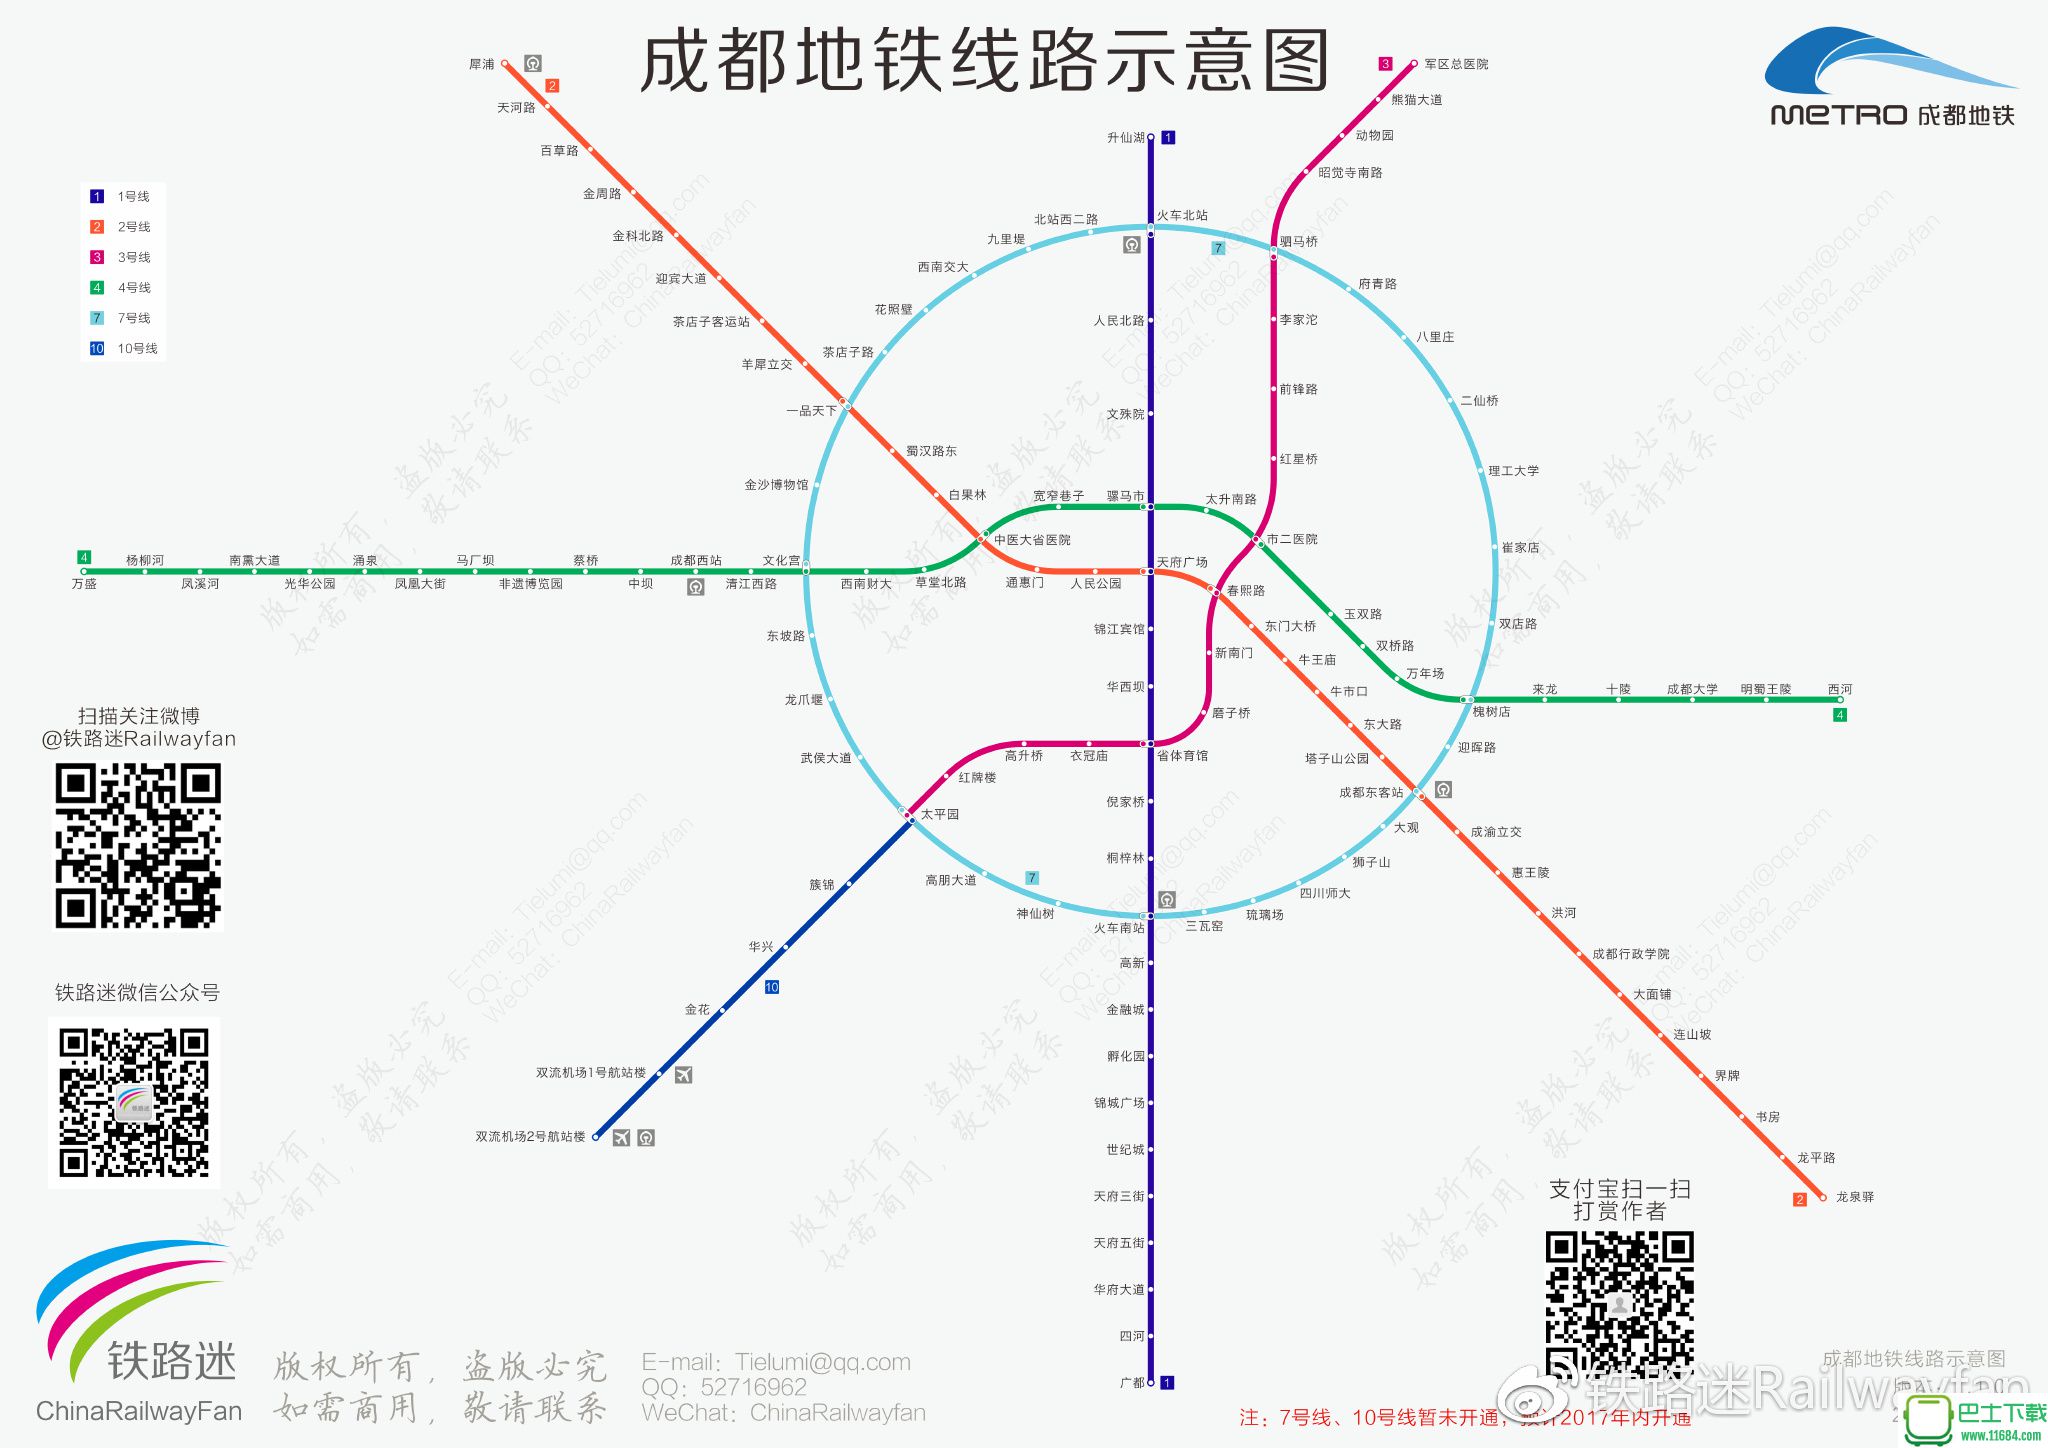 成都地铁线路示意图 2018最新版下载